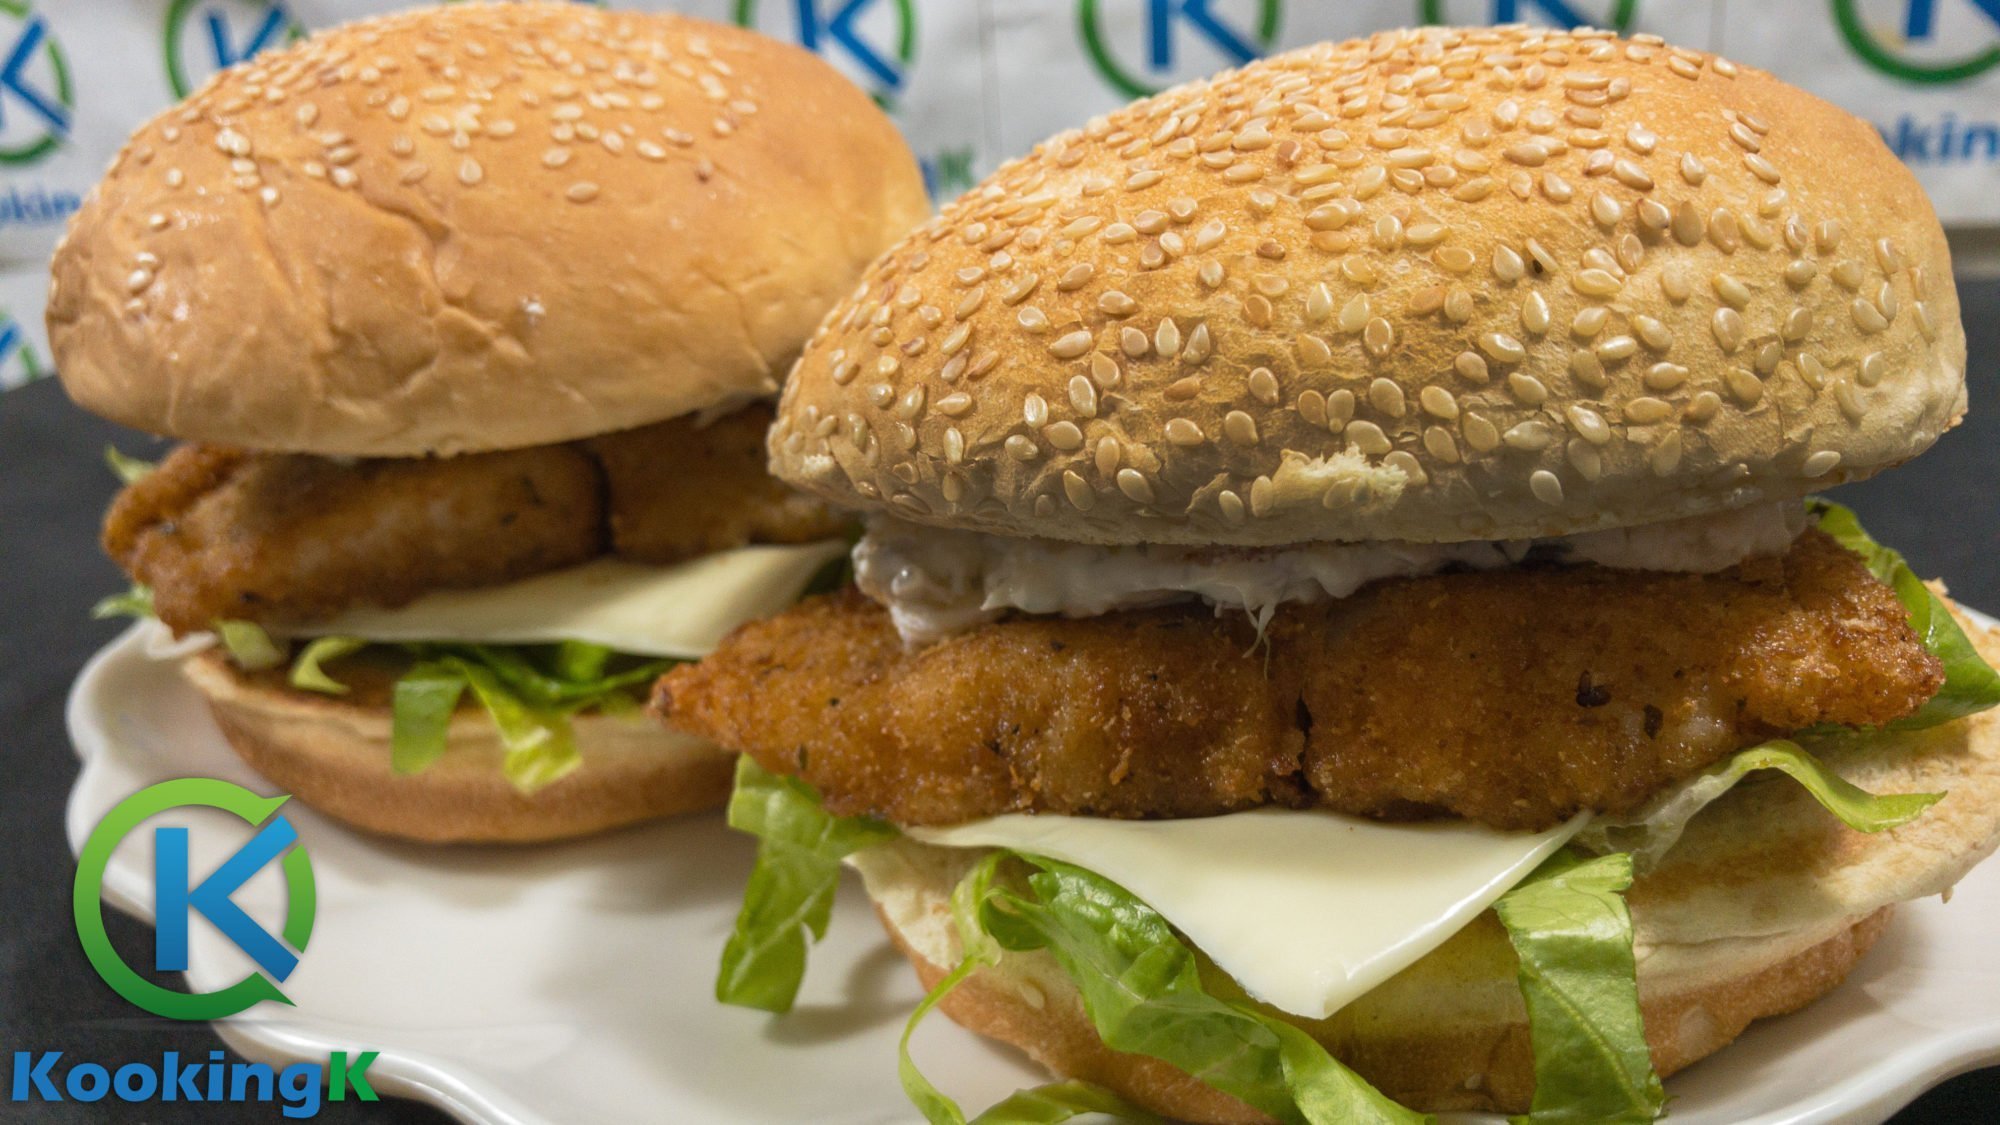 Crispy Fish Burger Recipe - Fish Filet Burger Recipe by KooKingK